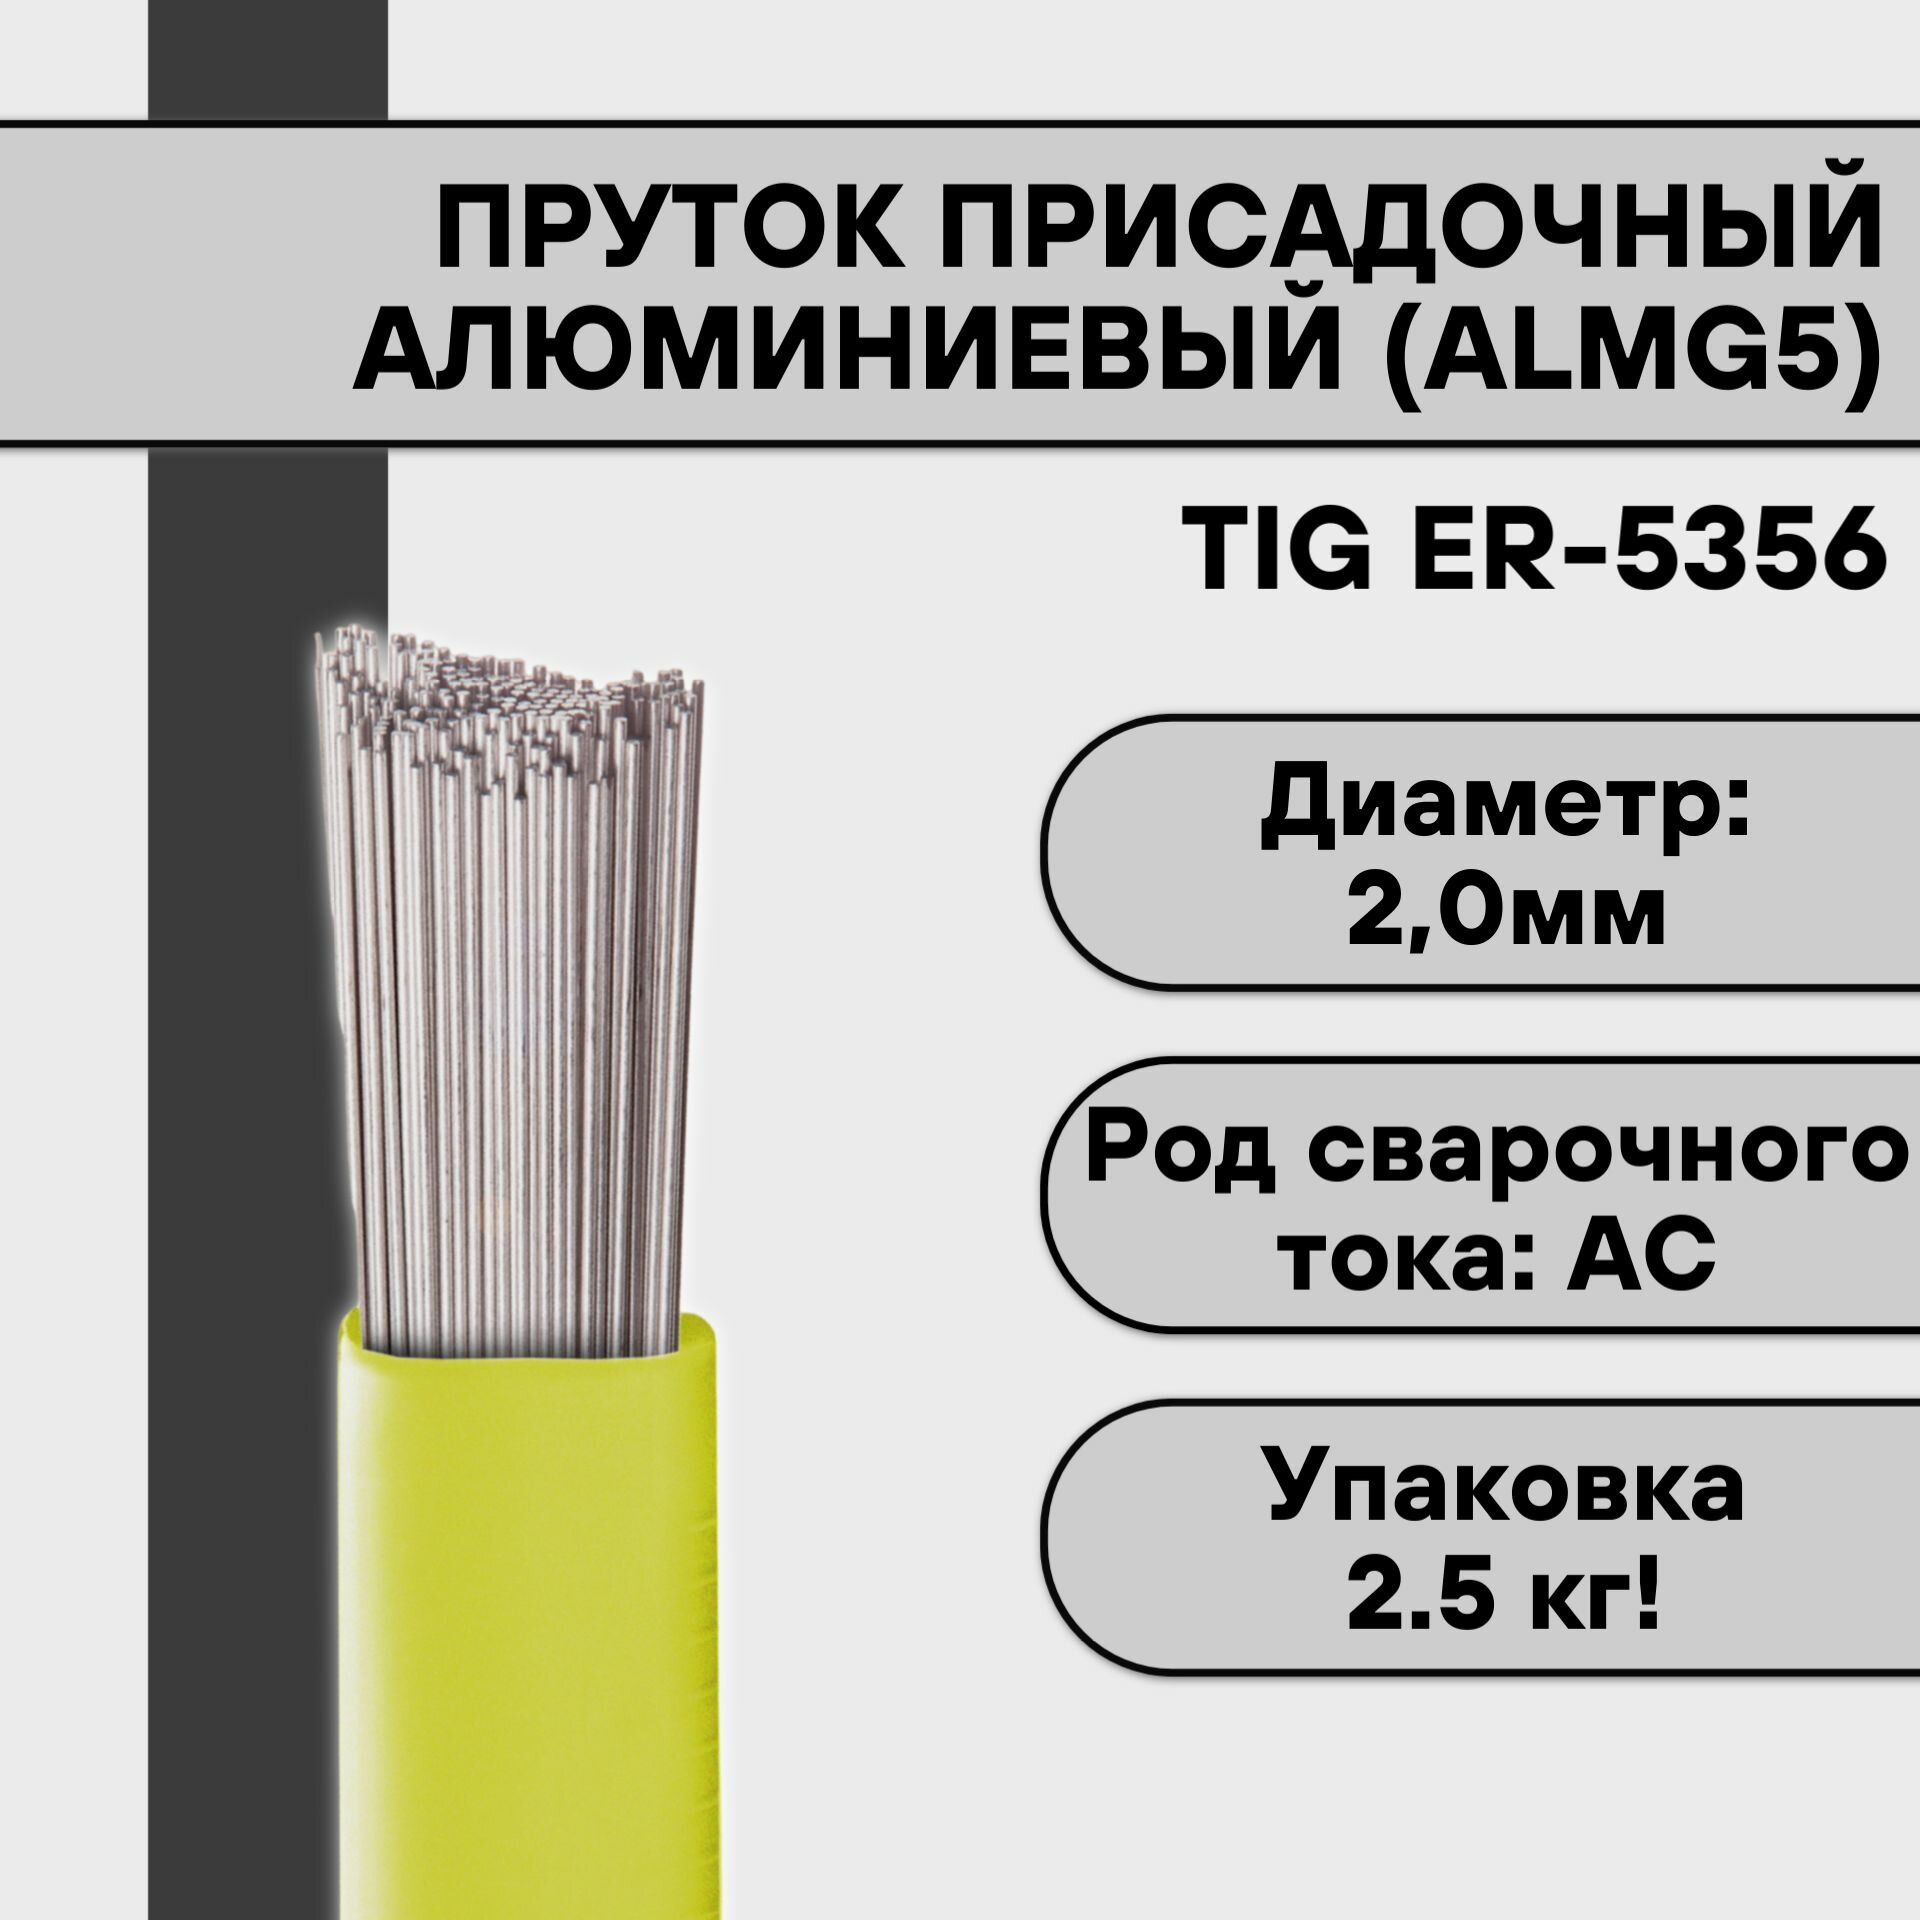 Пруток присадочный алюминиевый для TIG сварки ER-5356 (AlMg5) ф 20 мм (25 кг)